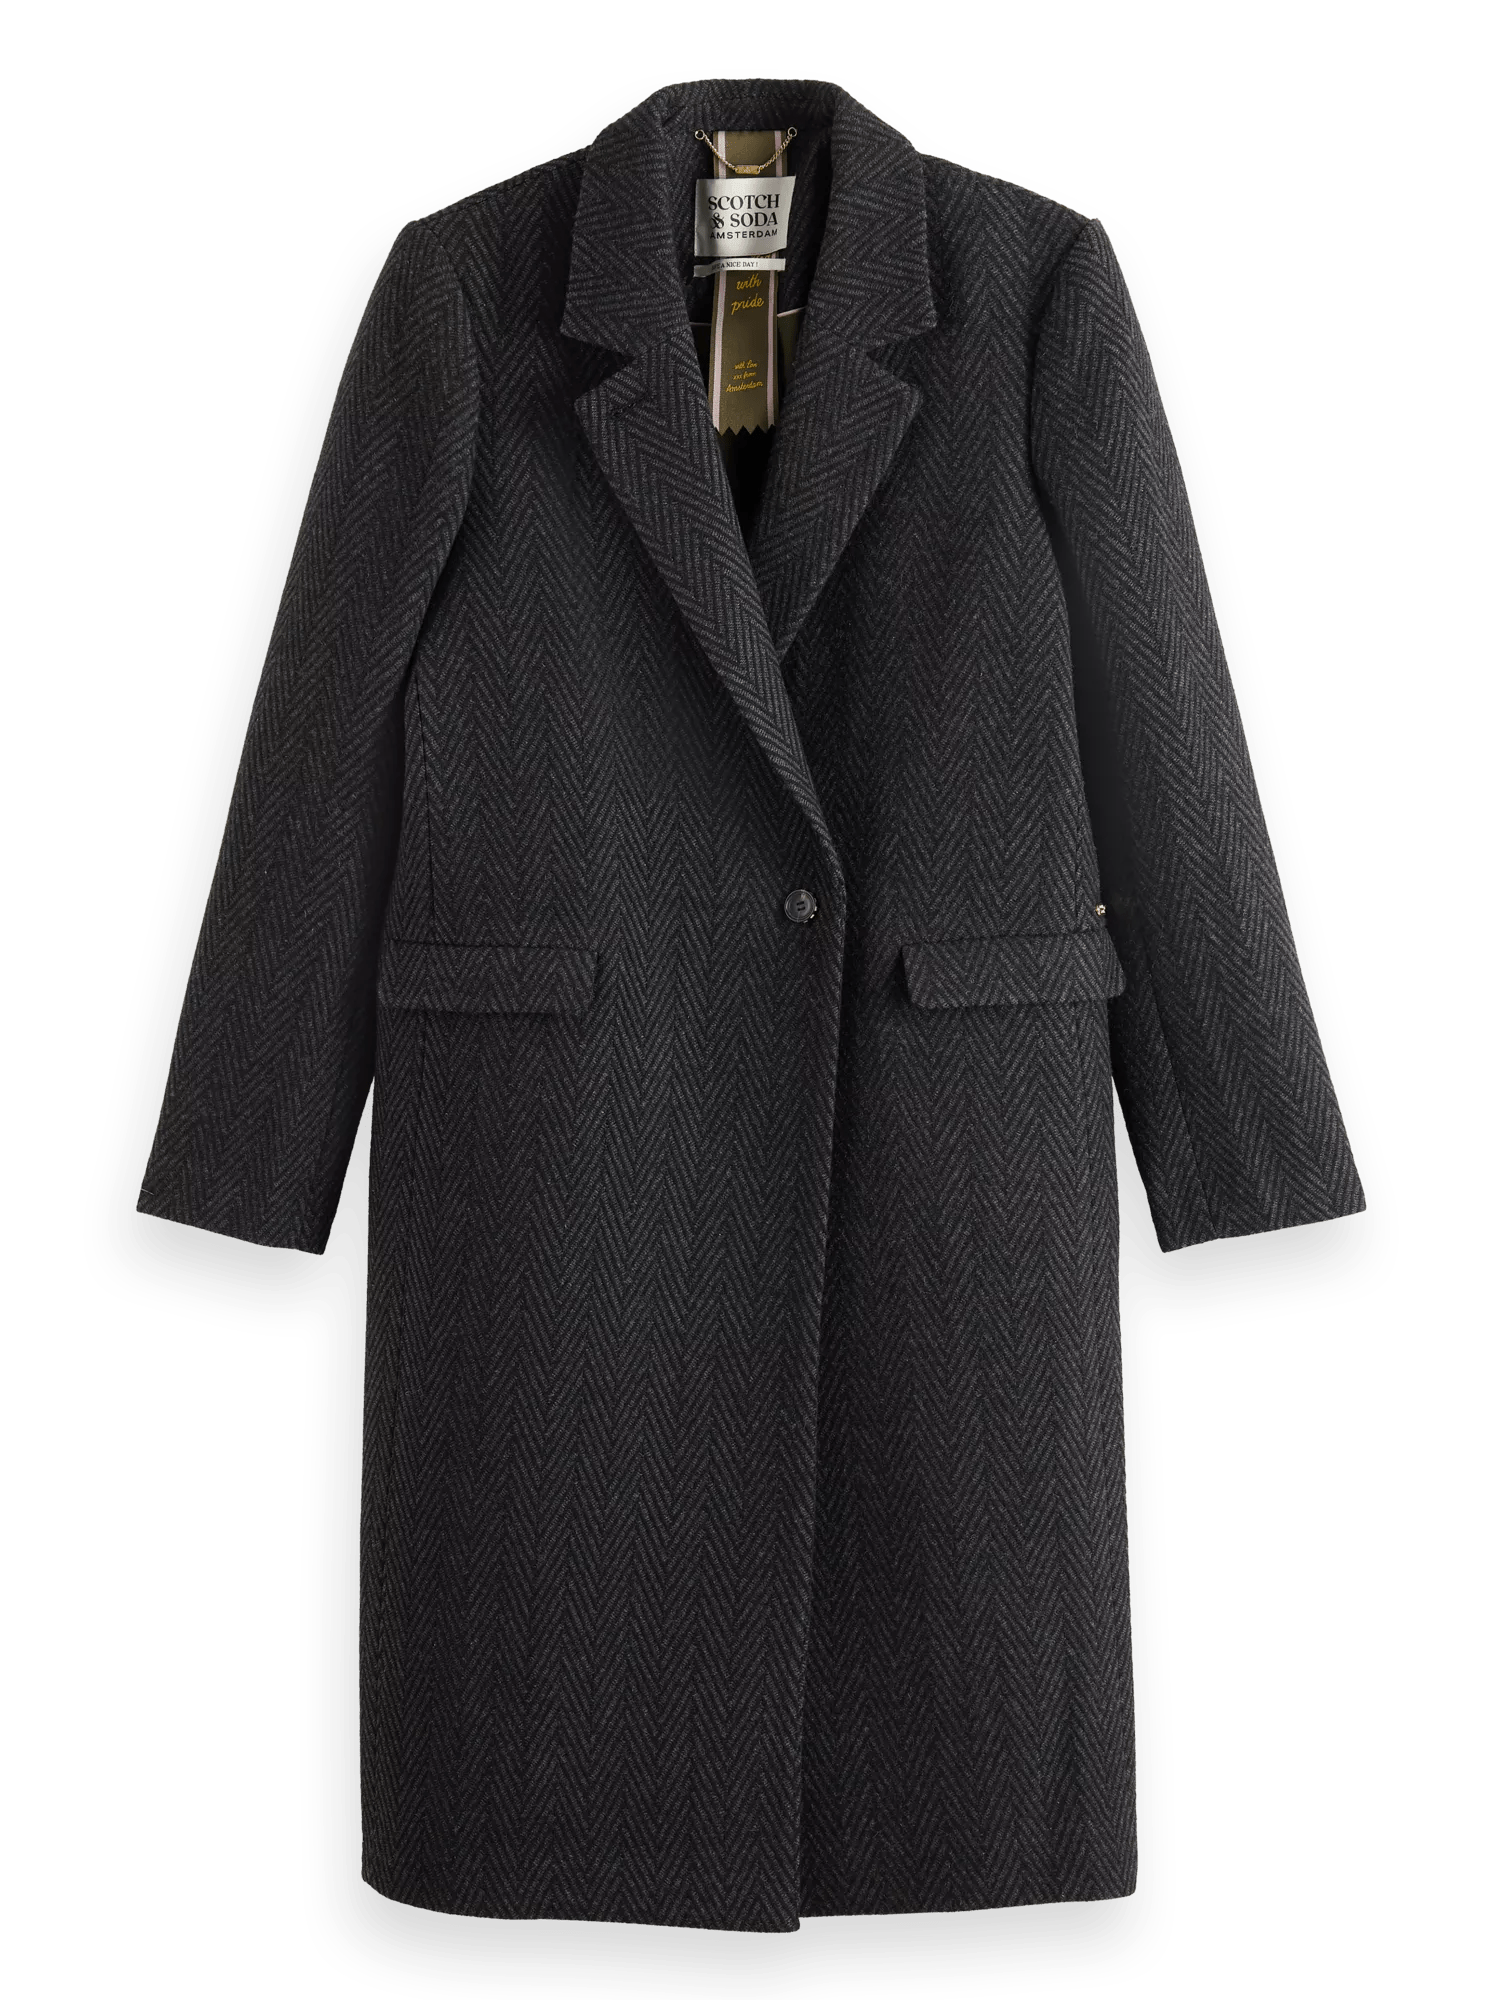 Scotch & Soda Getailleerde jas van wolmix FNT